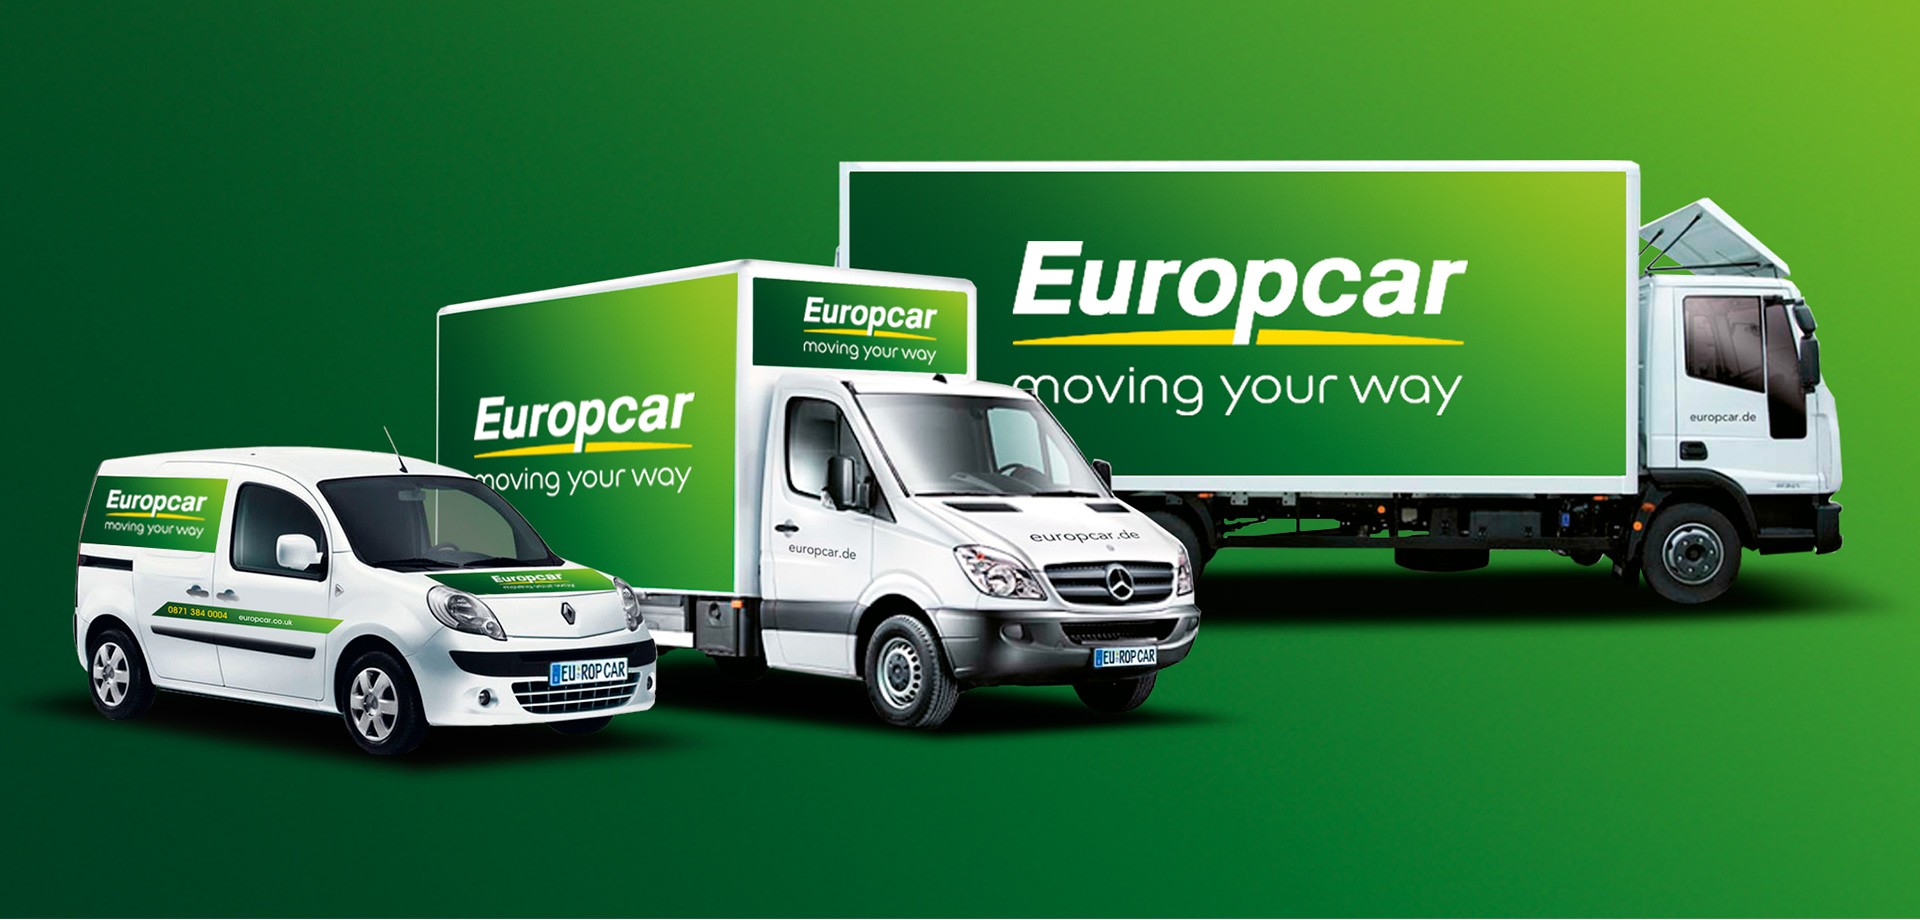 Europcar lanza en España su proyecto de coches conectados con Telefónica y Geotab